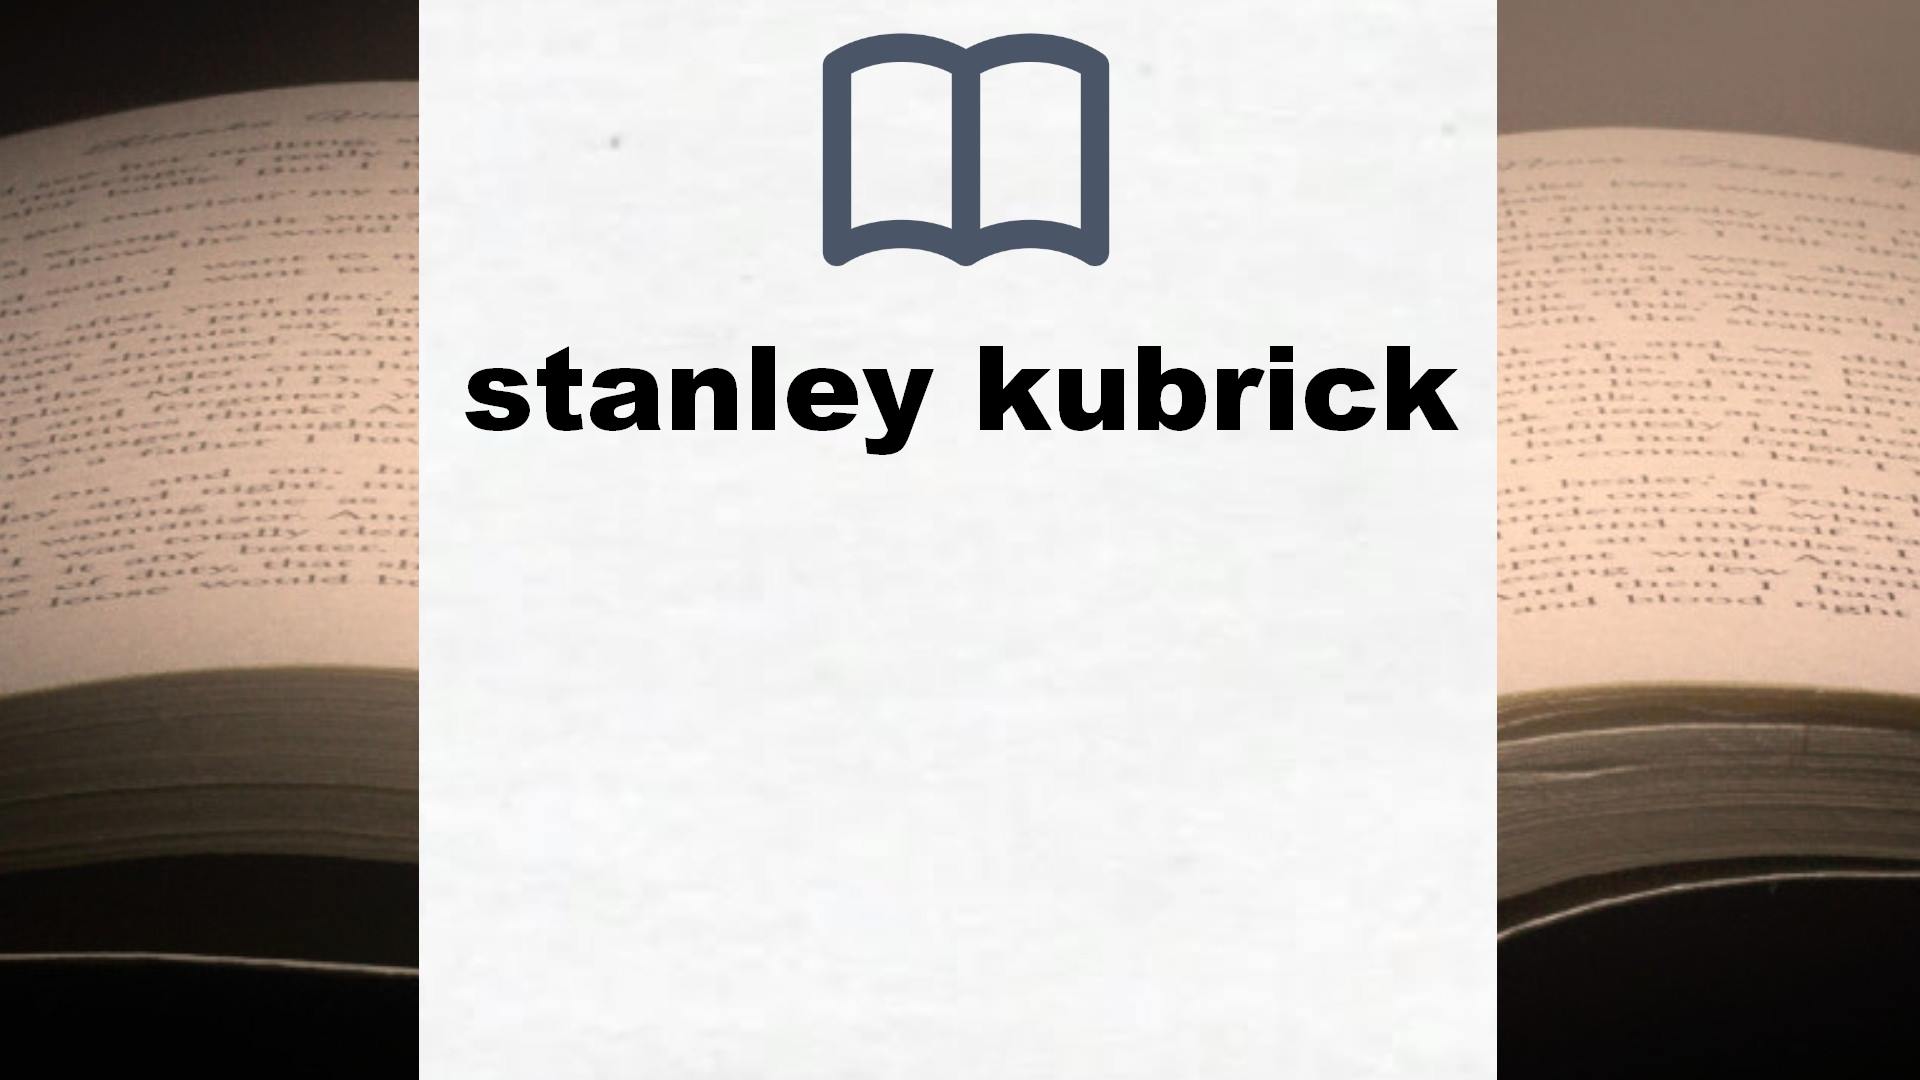 Libros sobre stanley kubrick